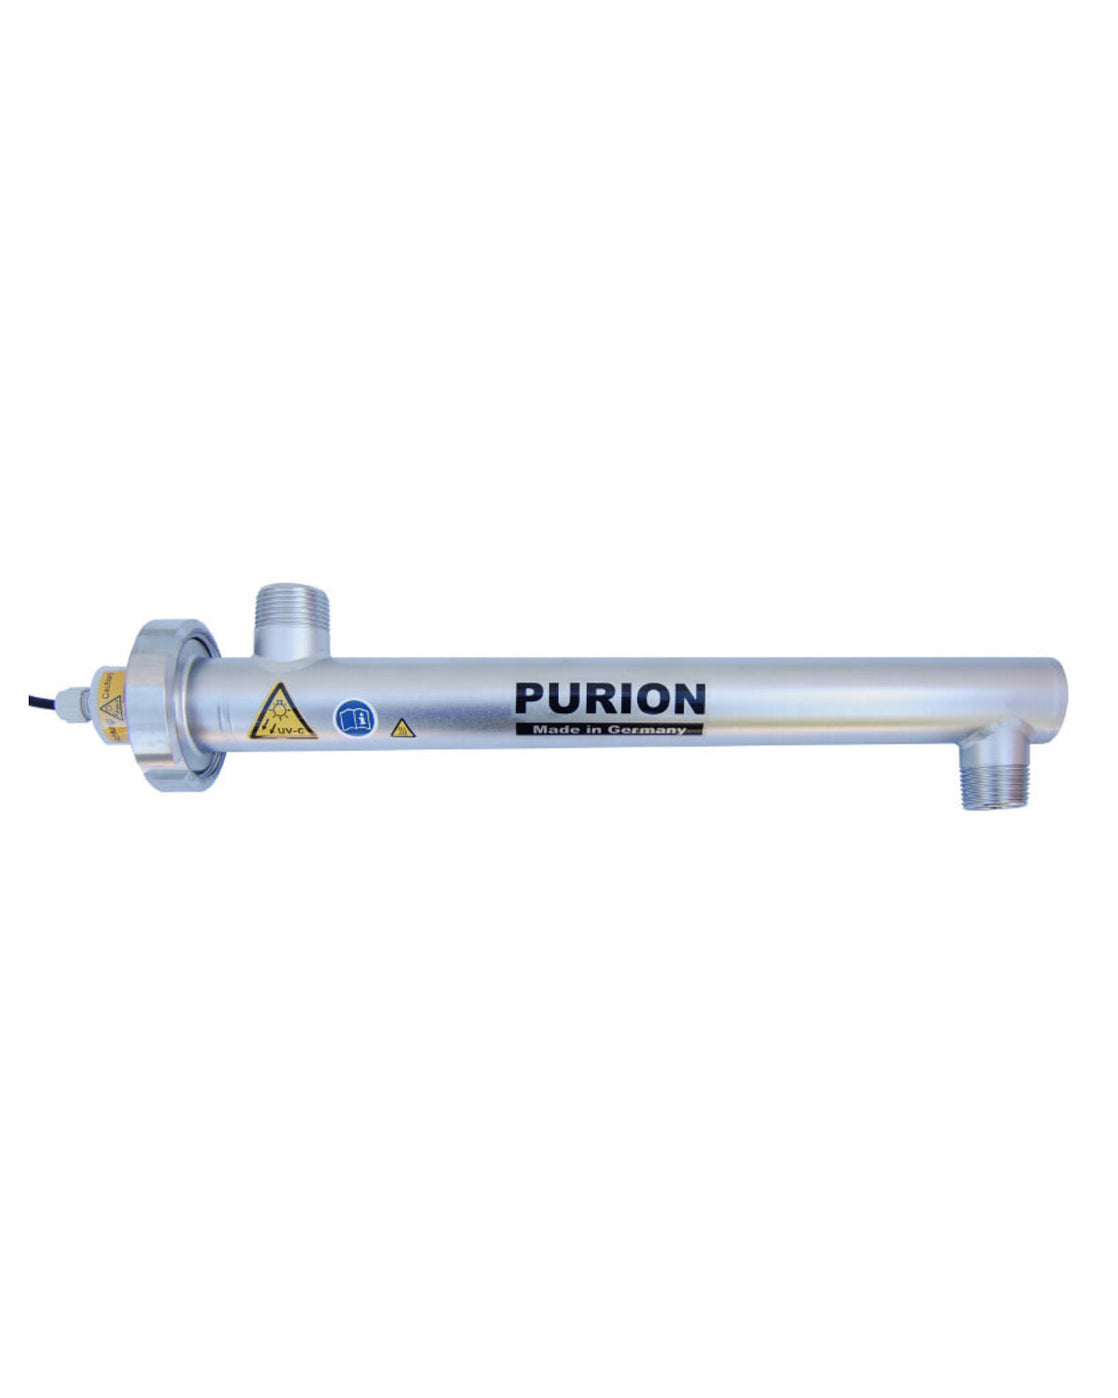 Das PURION 1000 OTC Bundle der PURION GmbH bietet eine zuverlässige und effiziente Lösung für die Selbstversorgung mit Trinkwasser. Mit seiner fortschrittlichen Technologie sorgt es für eine wirksame Desinfektion des Wassers und sorgt für sauberes und reines Trinkwasser.